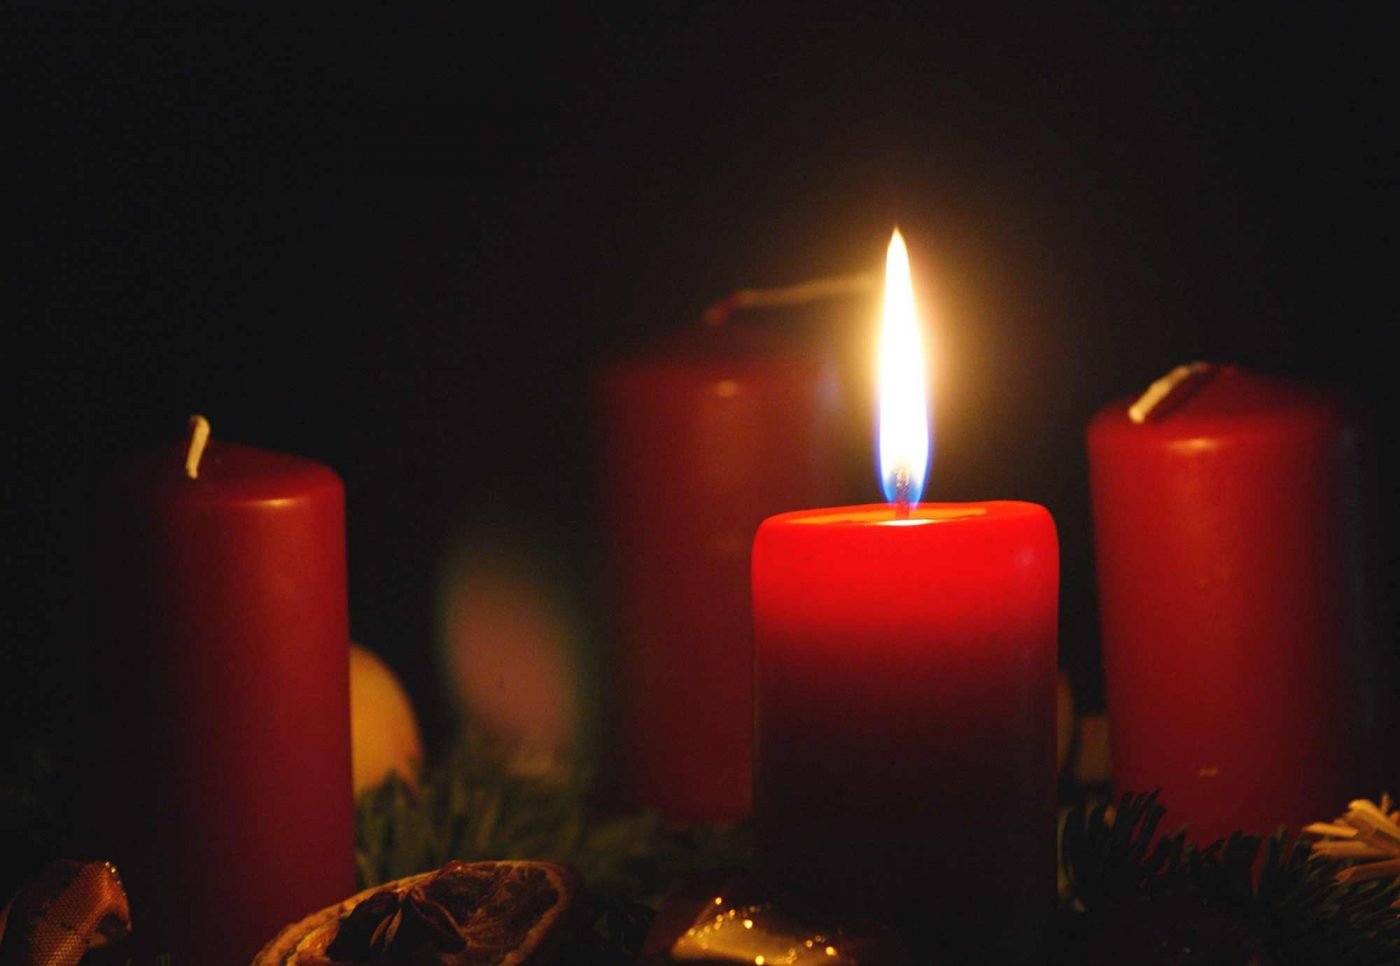 "Lassen wir das Licht der Kerzen leuchten für die Verstorbenen und für die, denen sie fehlen. Das Licht der Hoffnung scheint in die Dunkelheit." Foto: wikimedia/Liesel/cc by sa 3.0